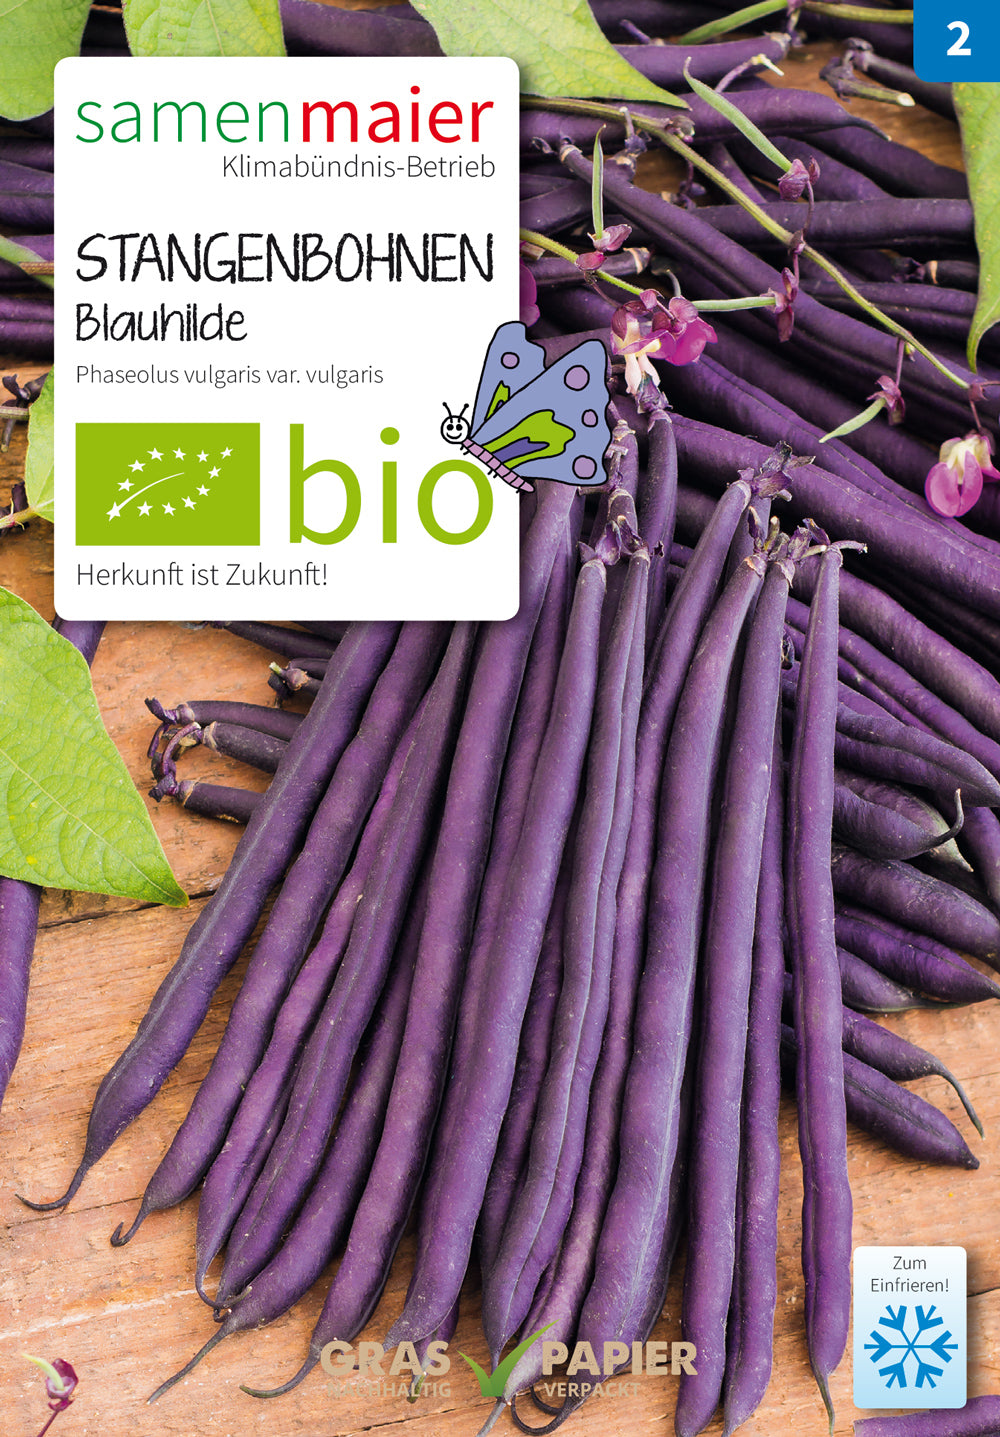 Blauhilde fadenlose Stangenbohne | BIO Stangenbohnensamen von Samen Maier